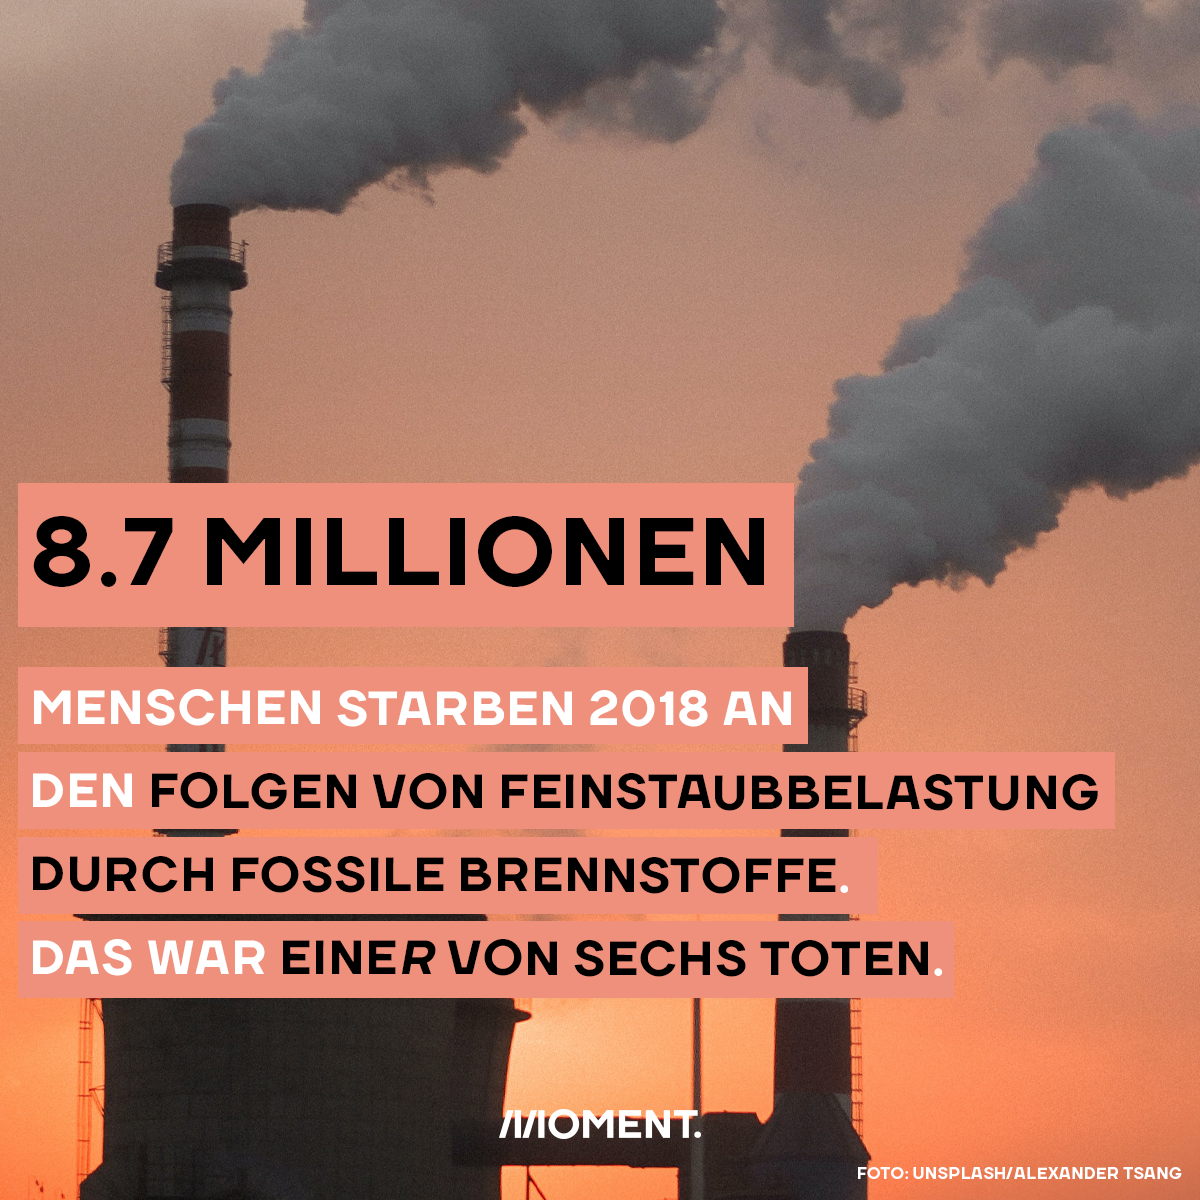 8.7 Millionen Menschen starben 2018 an den Folgen von Feinstaubbelastung durch fossile Brennstoffe.